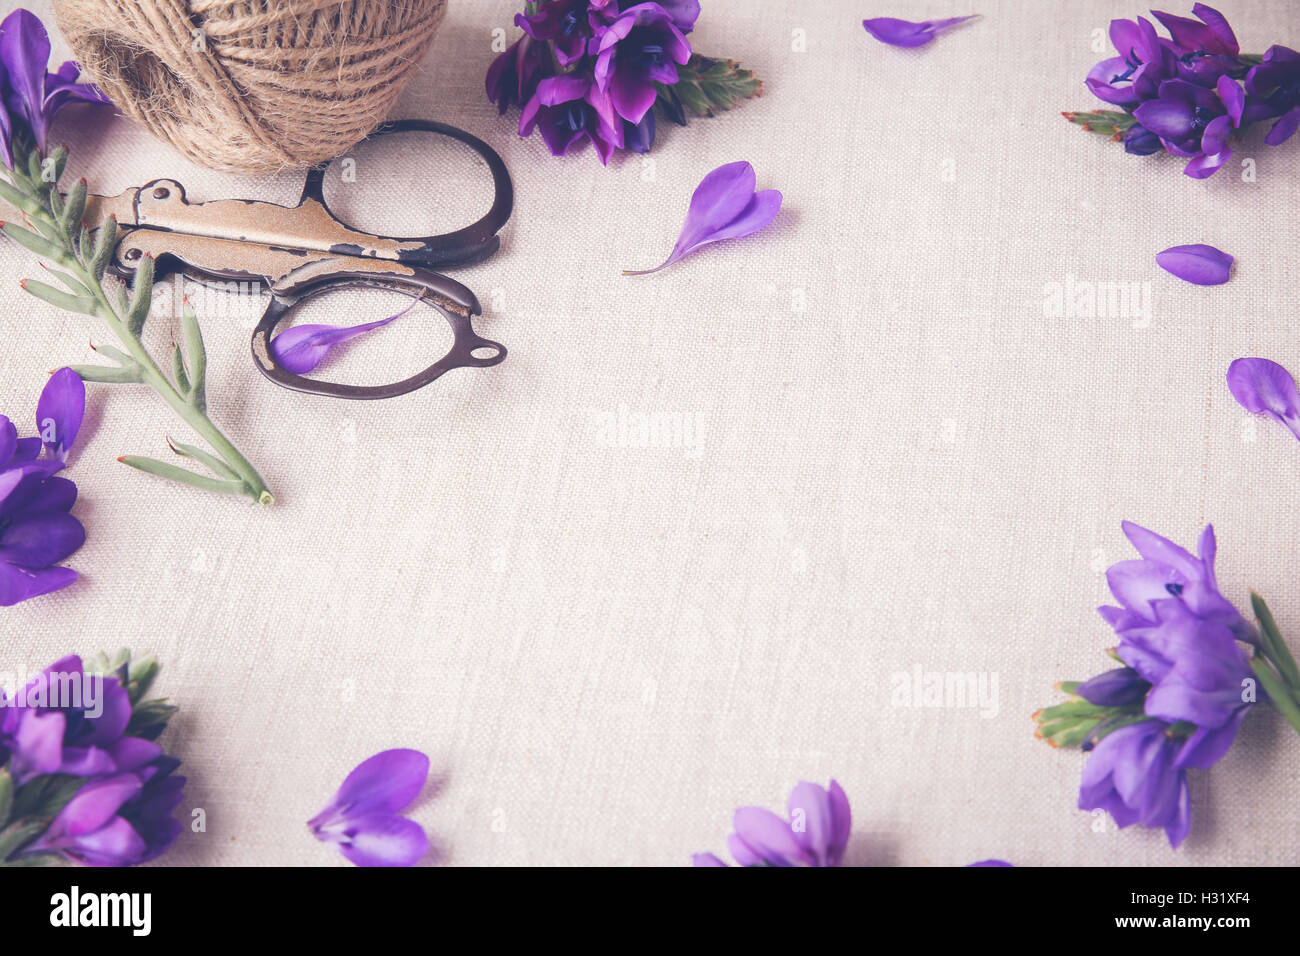 Lila blaue Blumen Handwerk Bindfäden Arbeit auf Leinen Tonen Kopie Raum Hintergrund Stockfoto